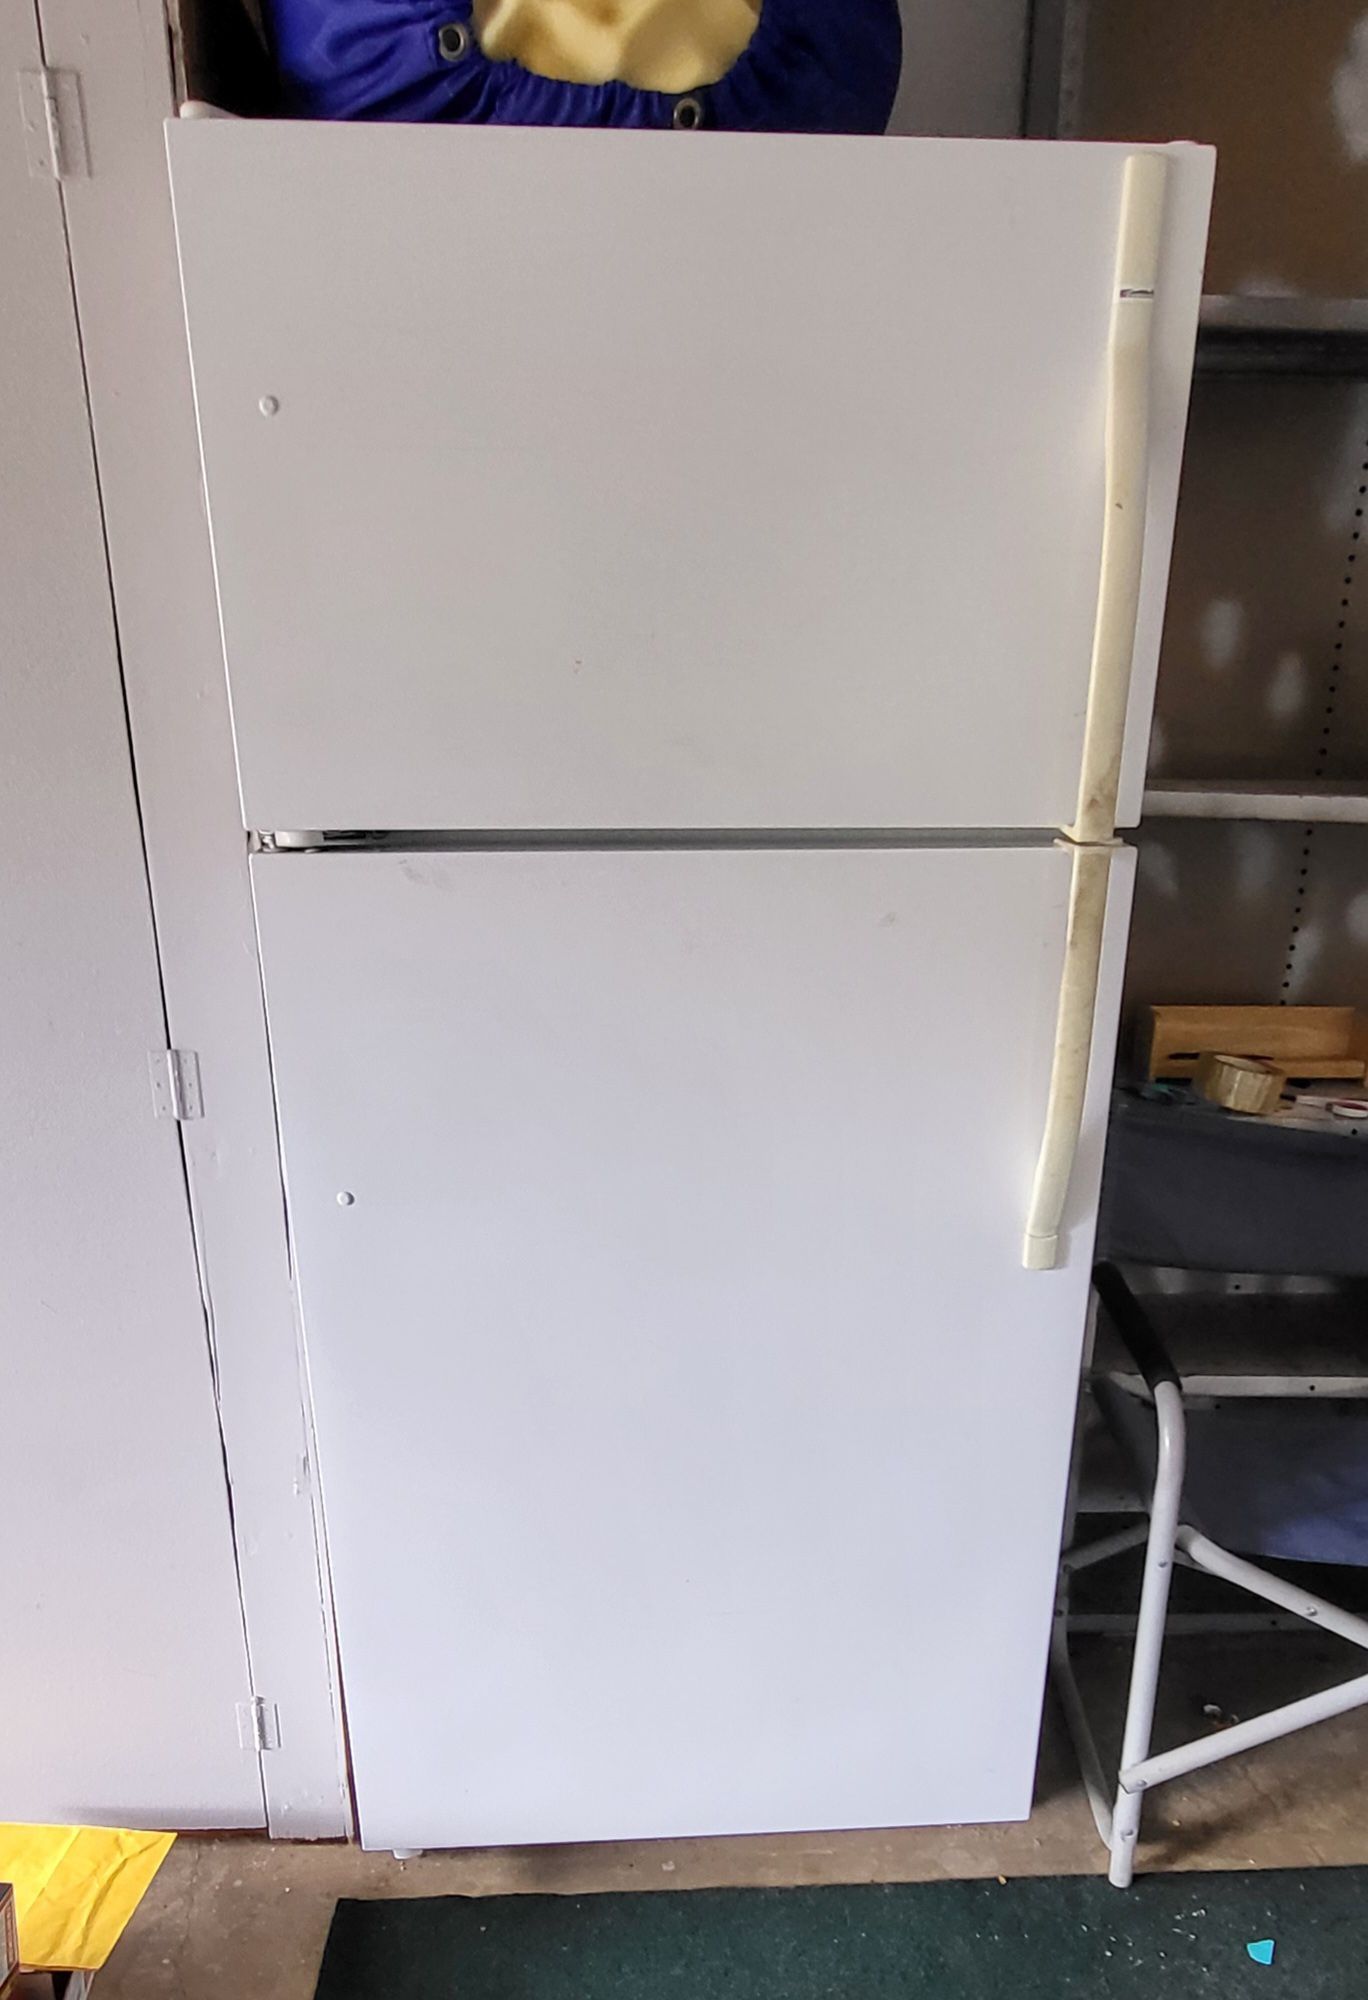 Garage Refrigerator 